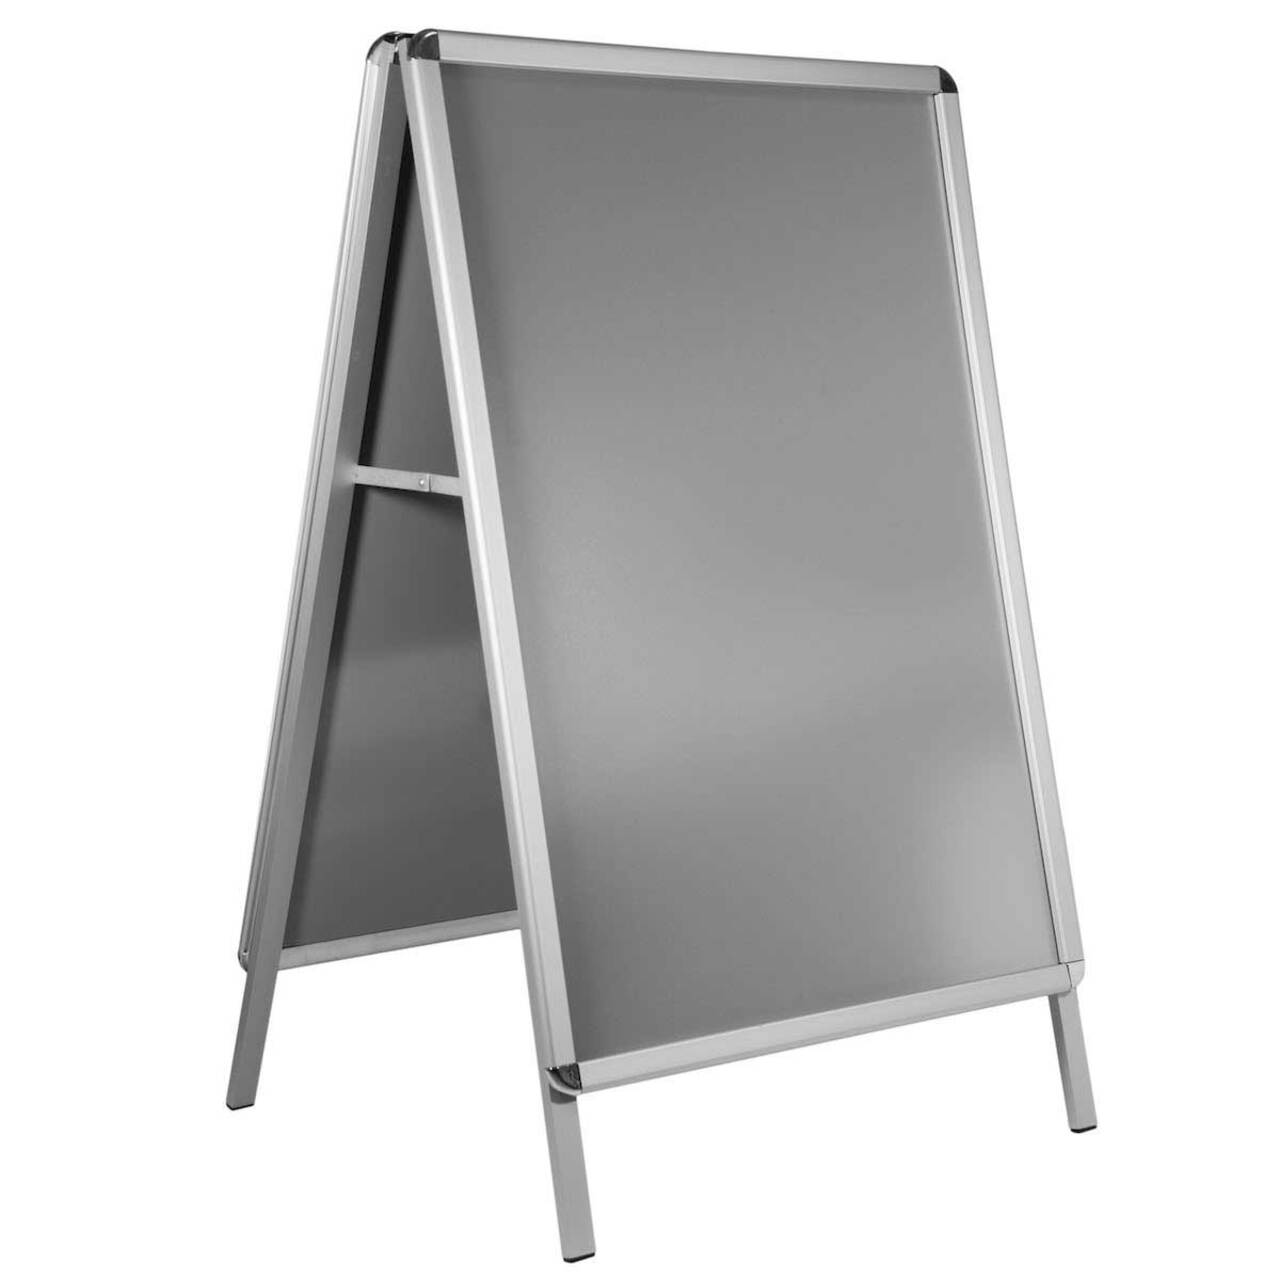 People Stopper, A board din profil aluminiu click  32mm cu colt rotund A1, JJ DISPLAYS, 594 x 841 mm